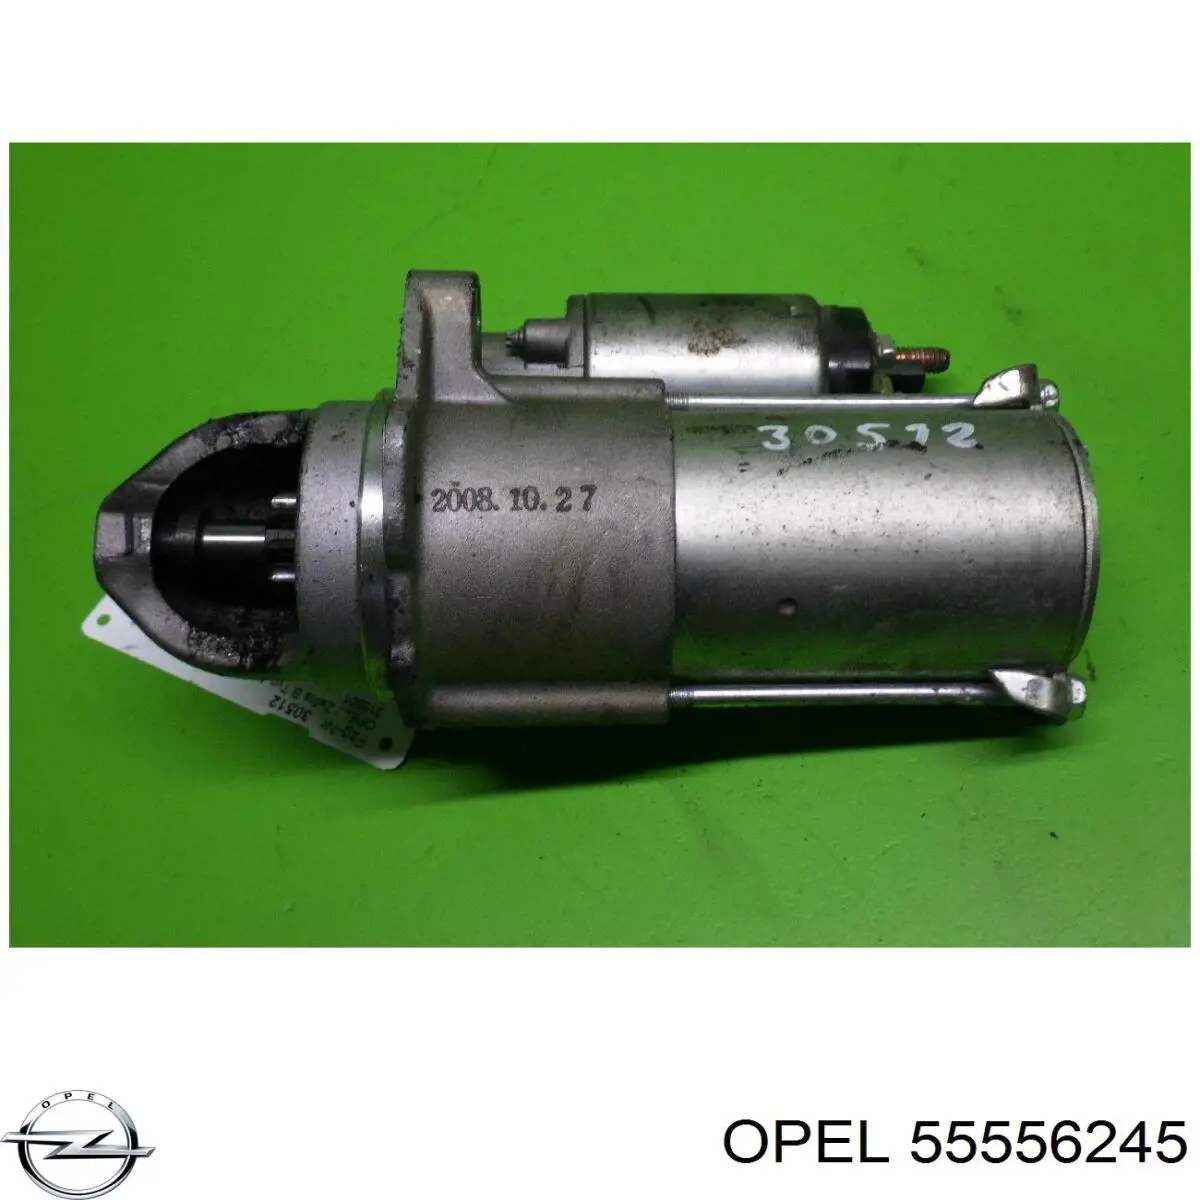 55556245 Opel motor de arranque